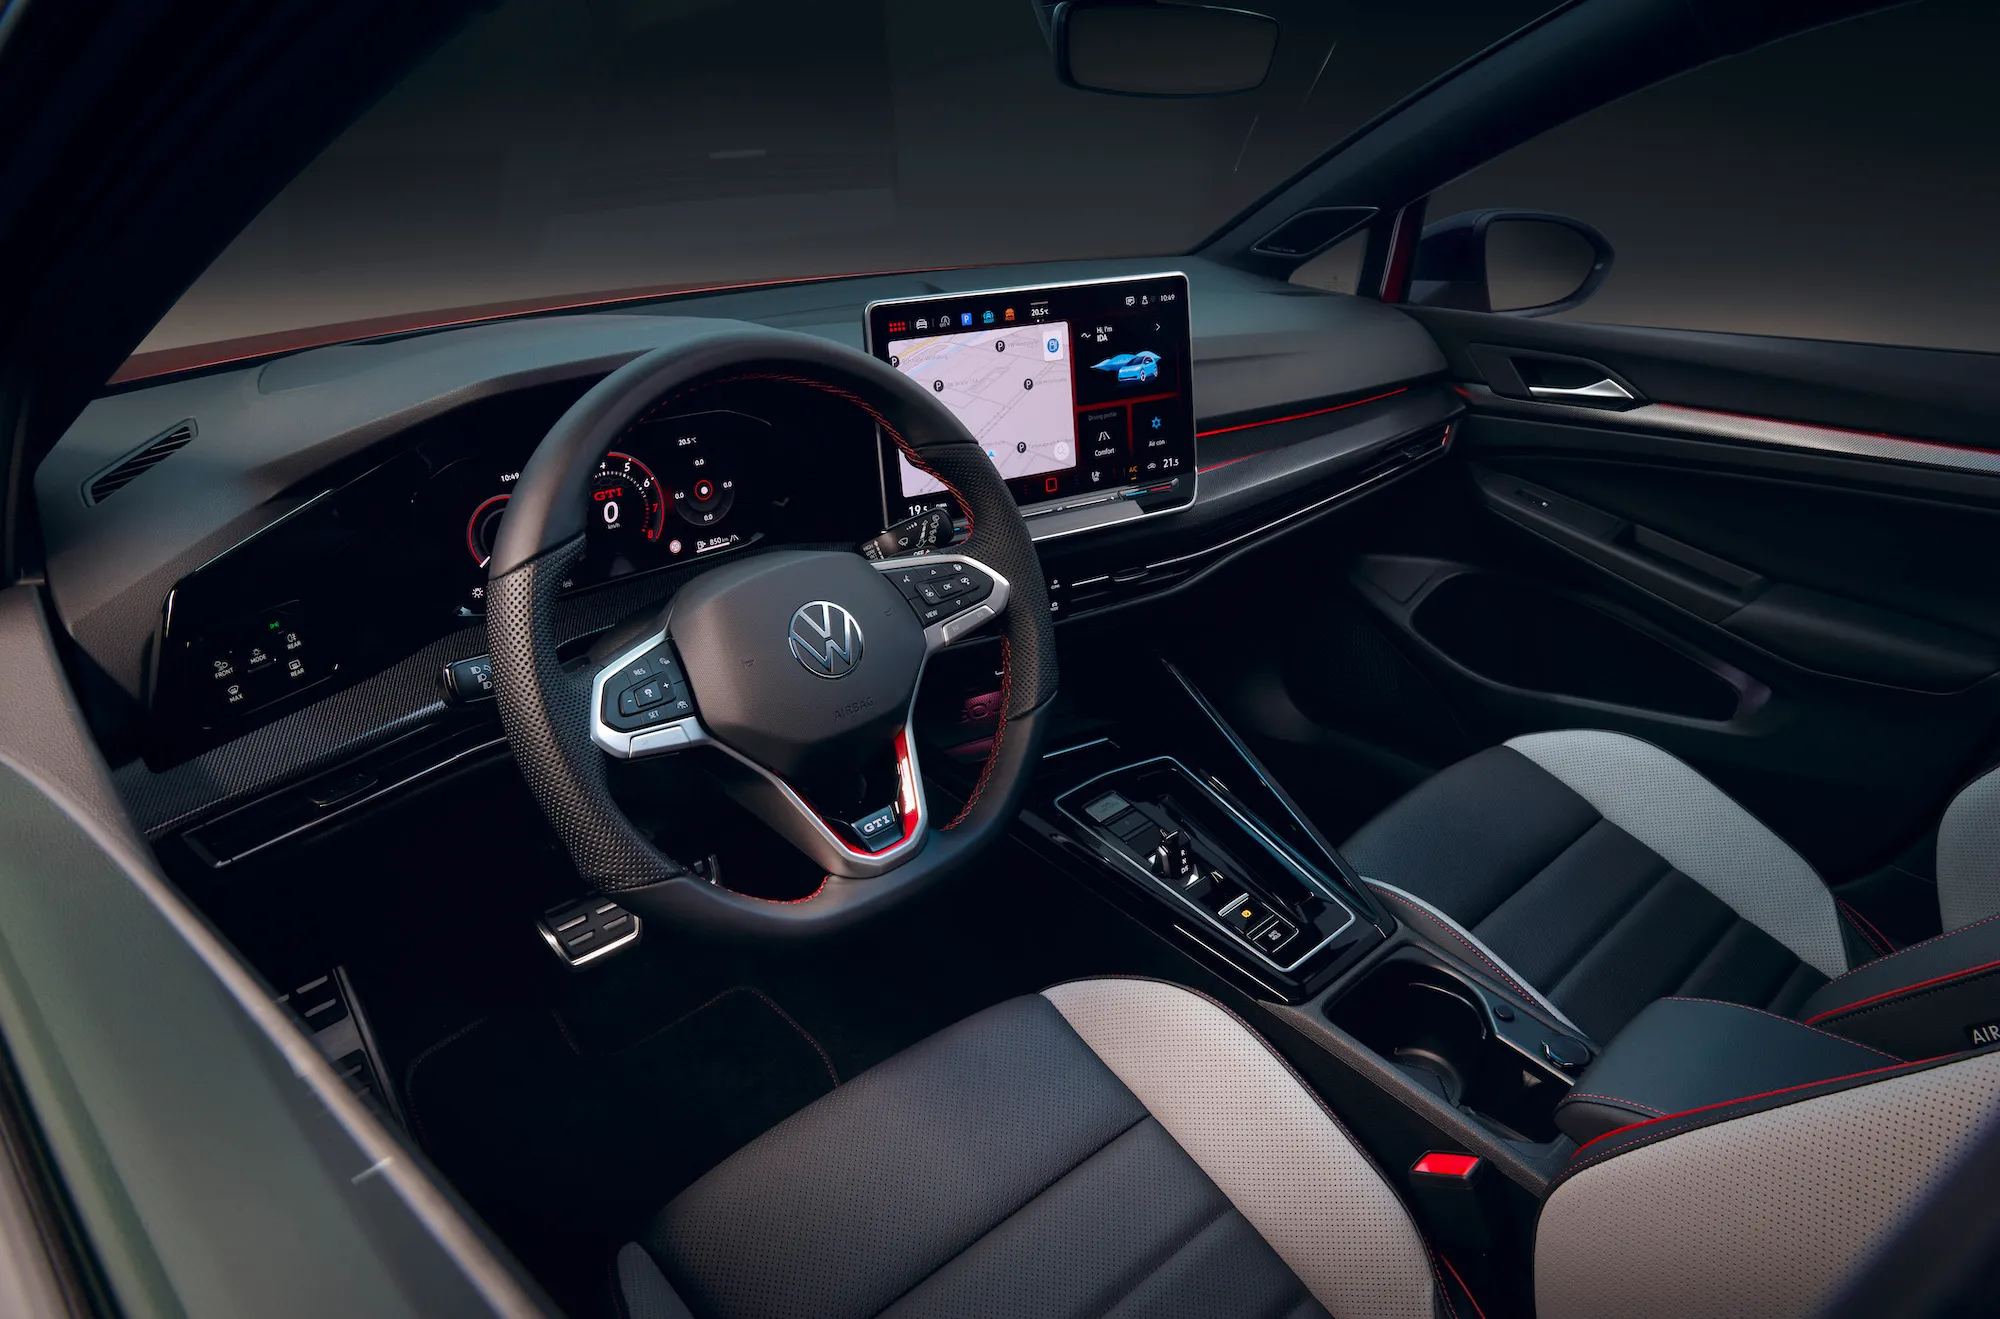 Uma imagem mostrando o interior de um novo Volkswagen Gold, incluindo o volante e a tela sensível ao toque.